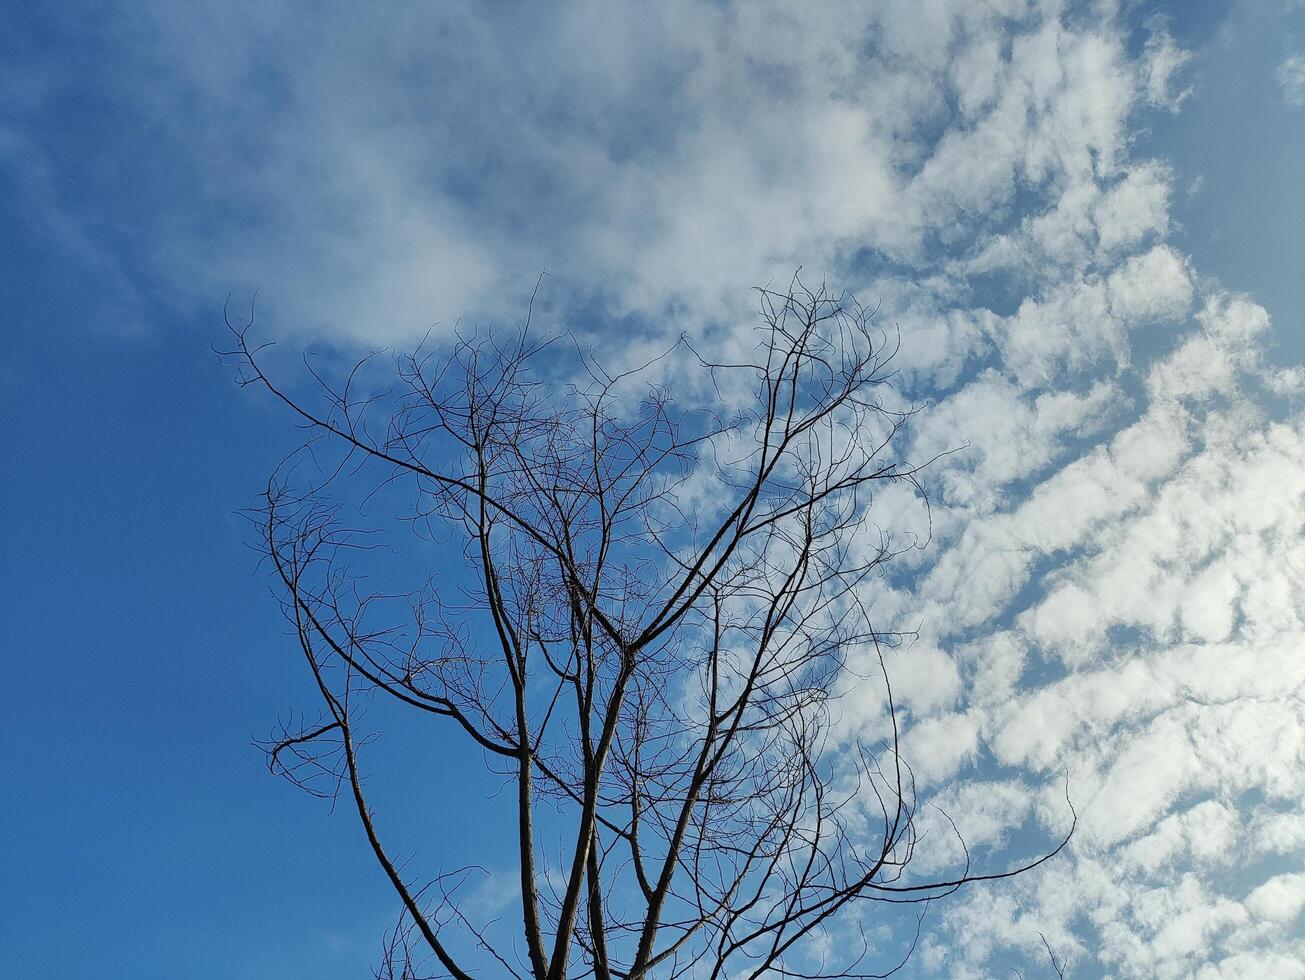 låg vinkel se av bar träd mot himmel foto